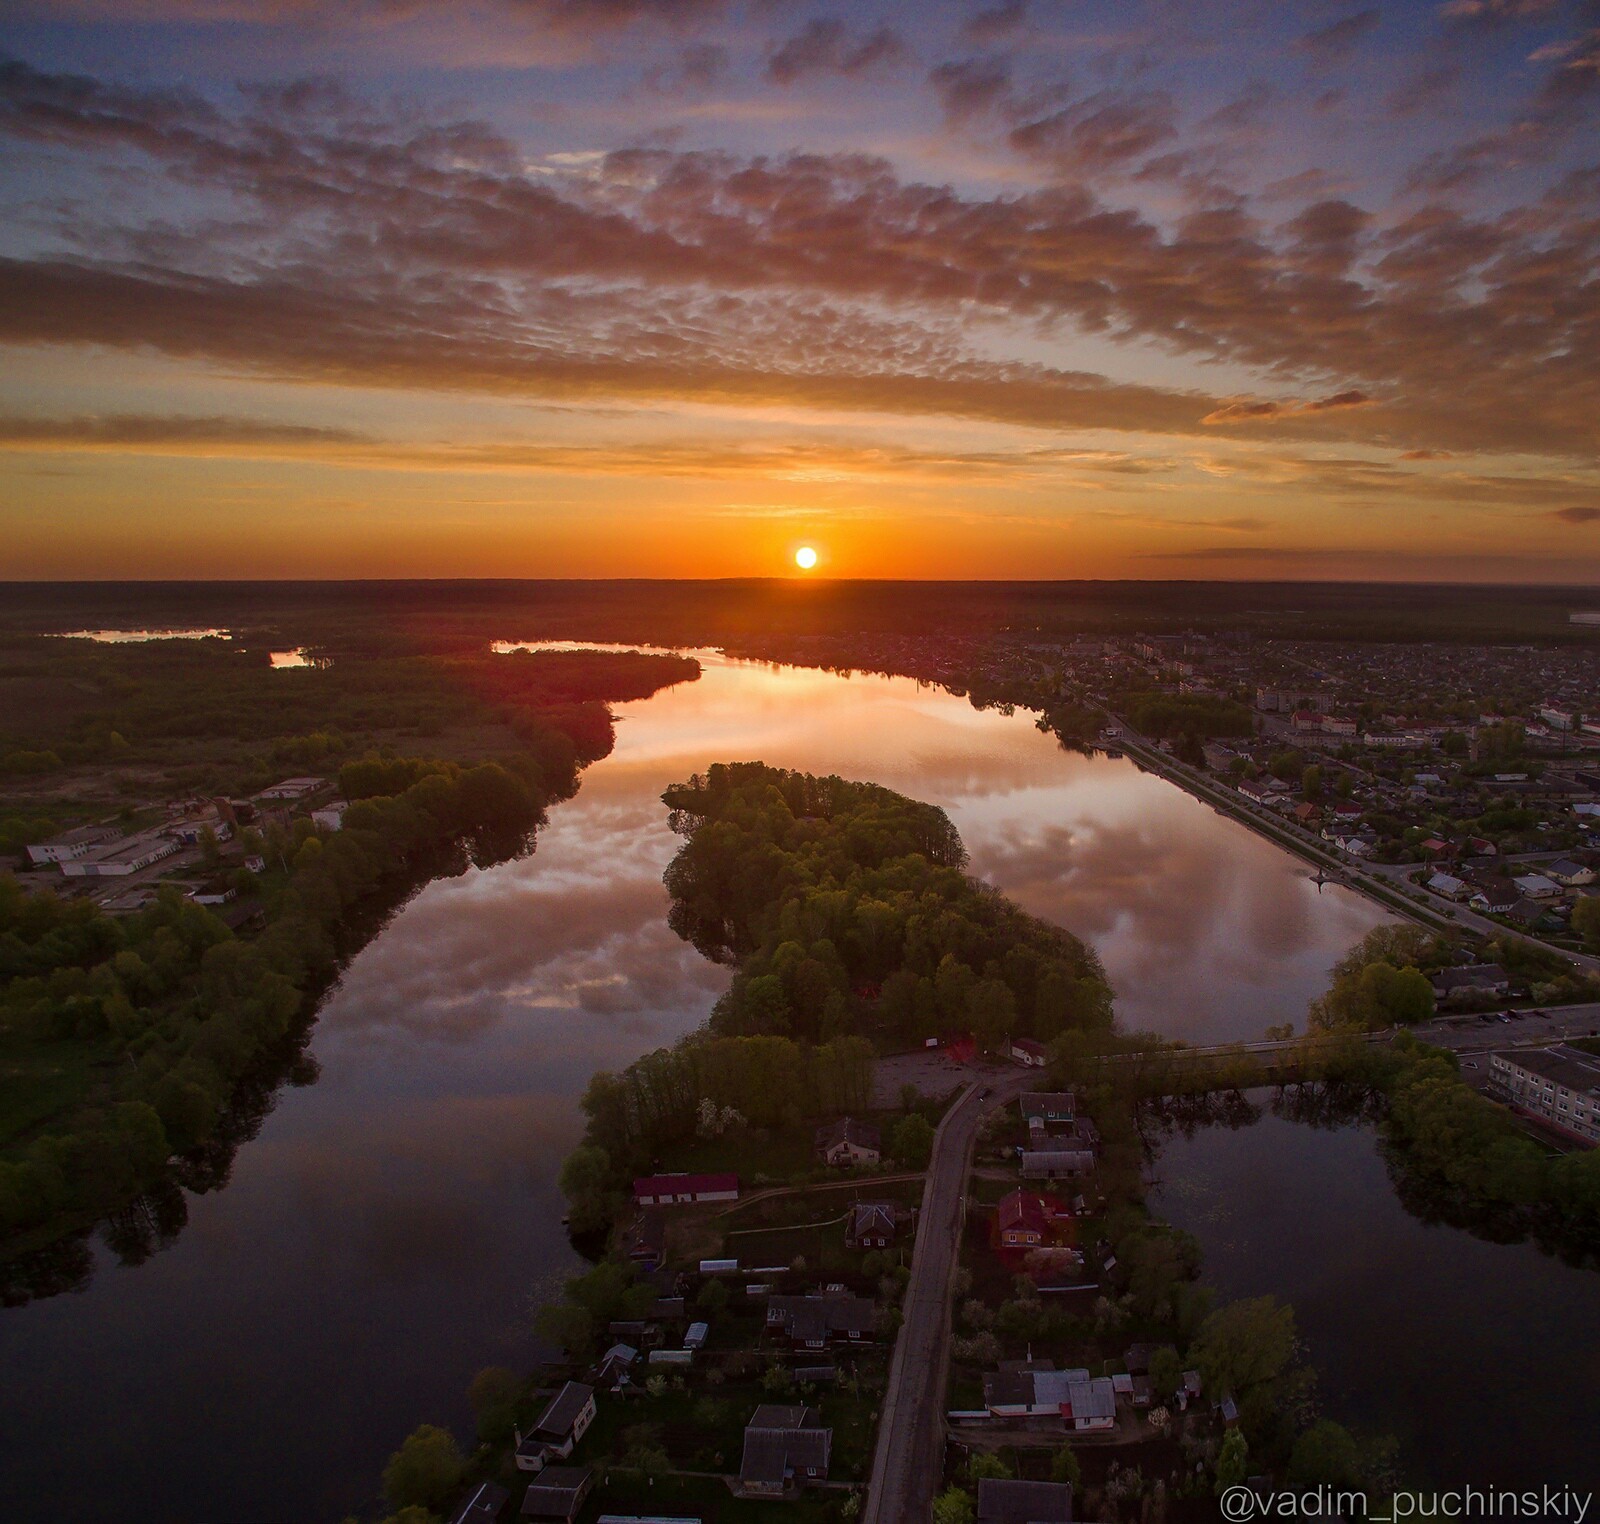 Sunset over hometown - DJI Phantom, Quadcopter, Homeland, Hobby, Republic of Belarus, My